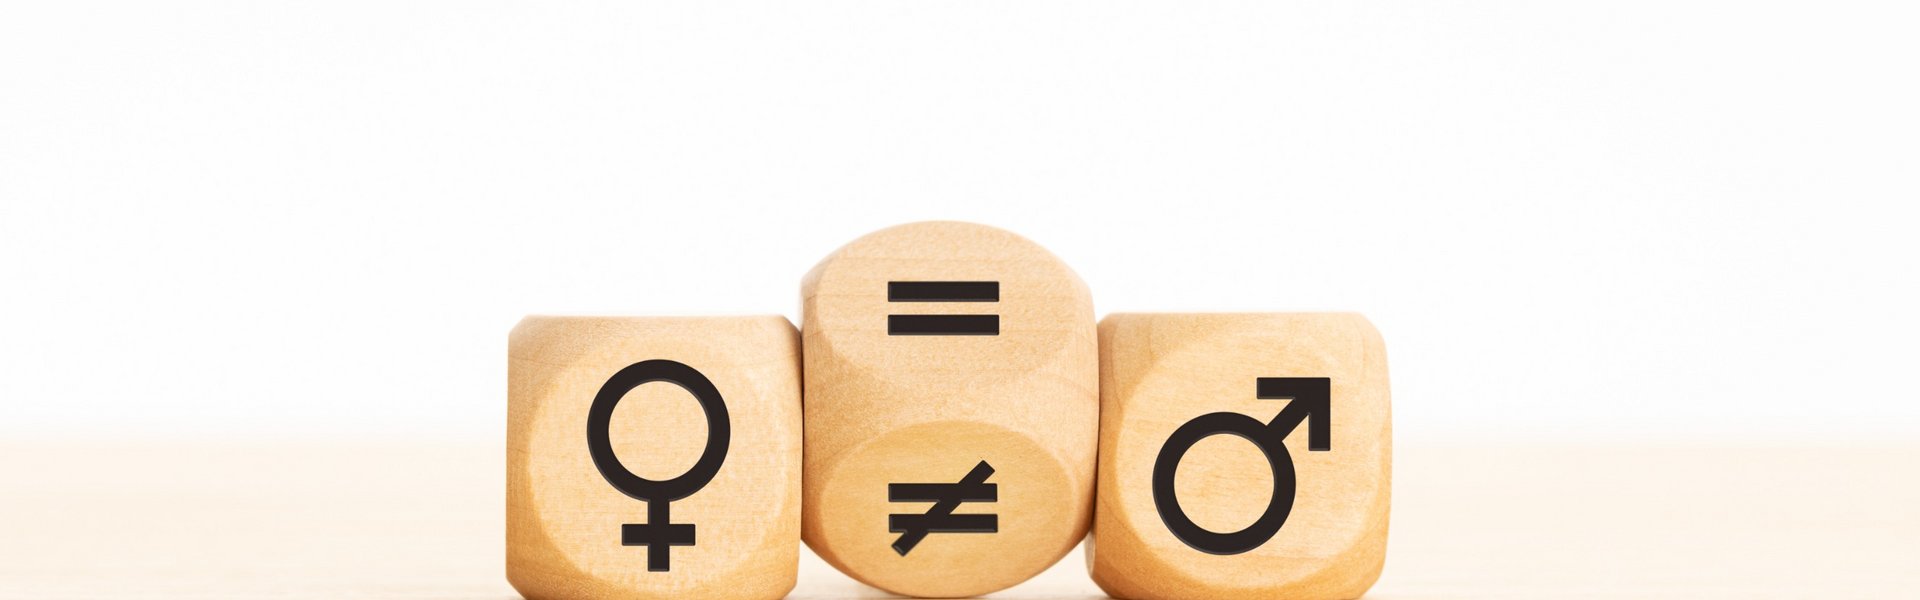 Holzklotz, der ein Ungleichheitszeichen in ein Gleichheitszeichen zwischen Symbolen für Männer und Frauen verwandelt